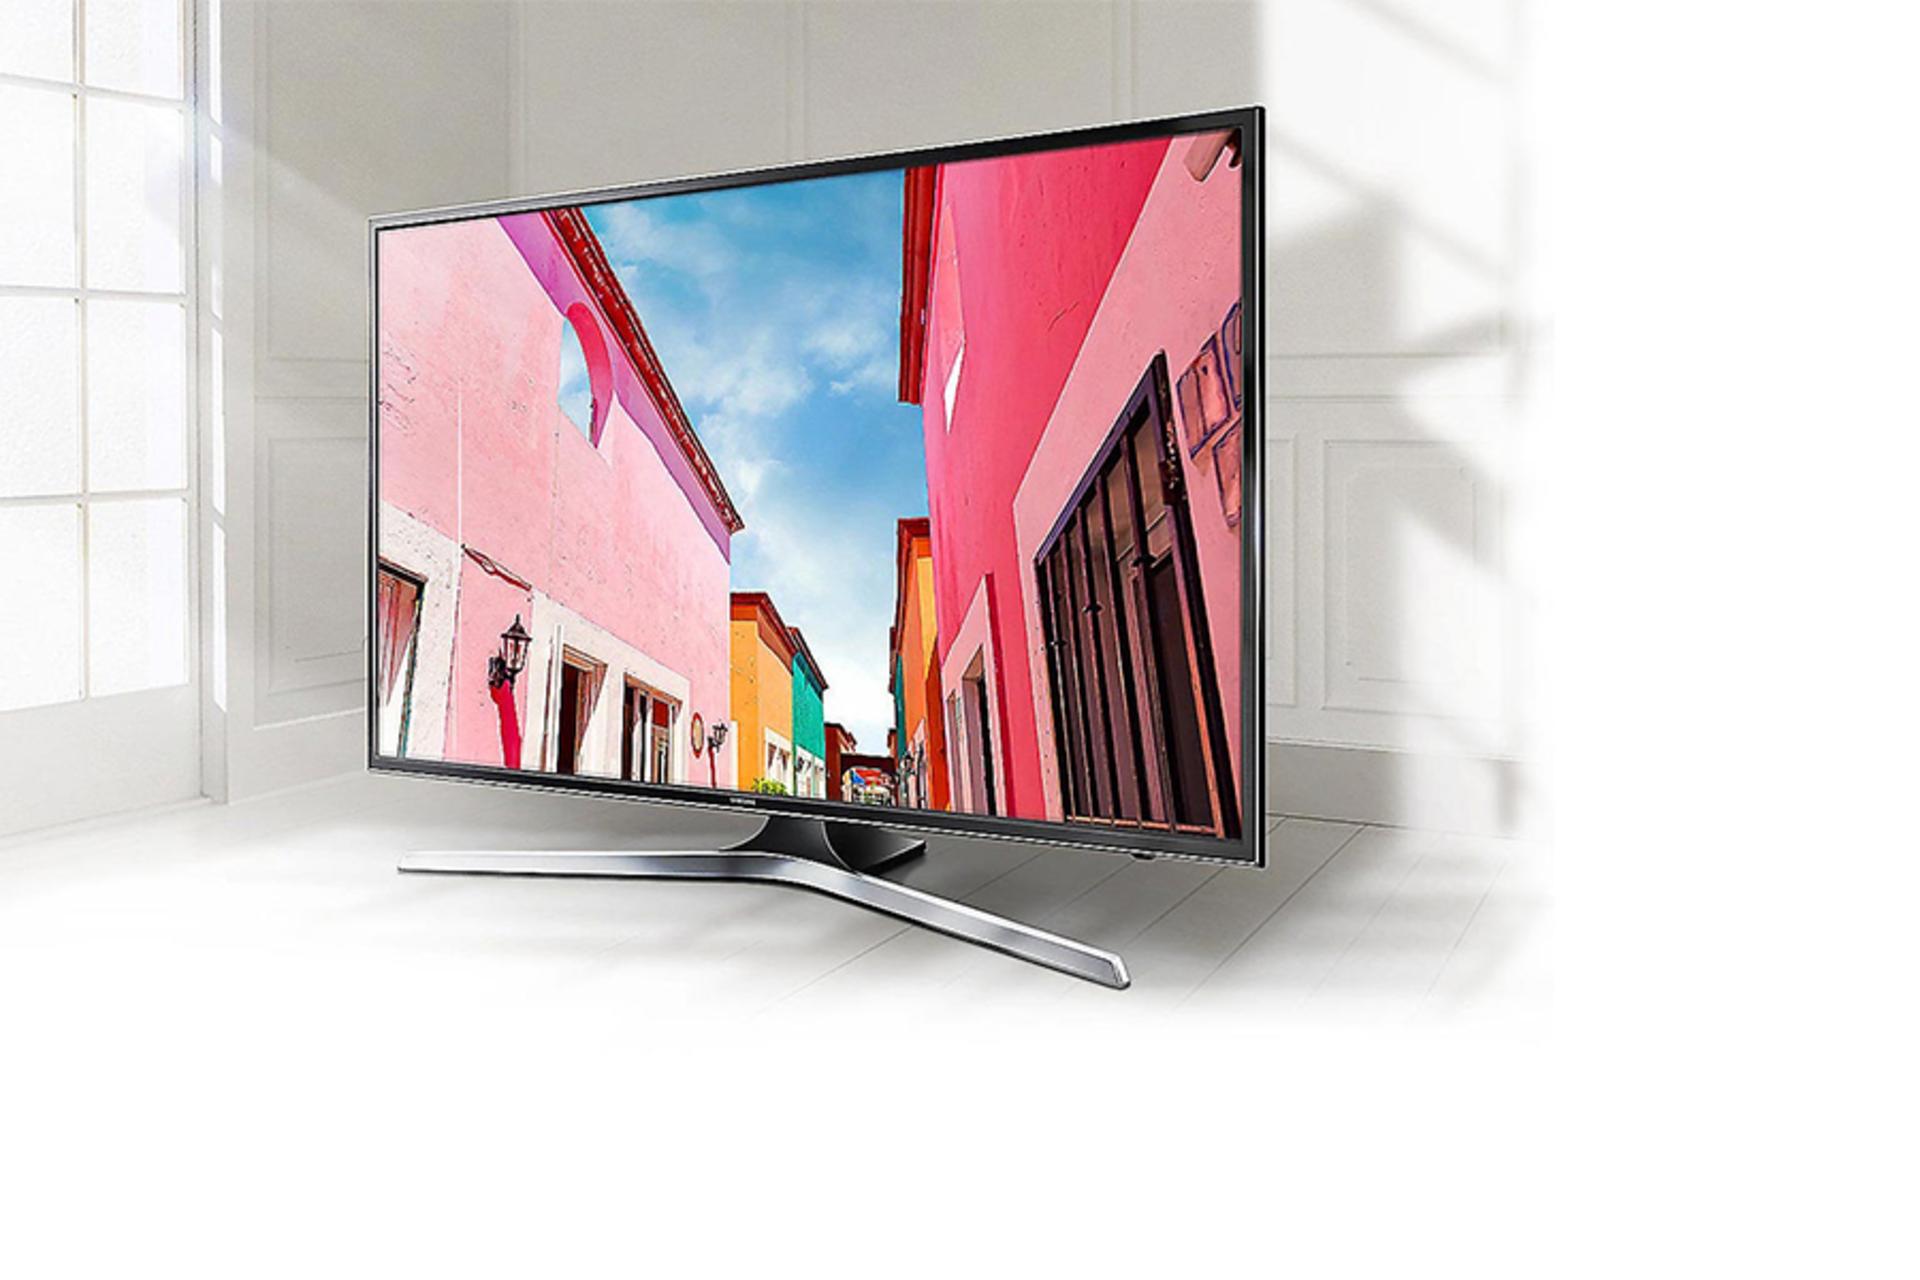 نمای نیمرخ تلویزیون سامسونگ NU7900 مدل 55 اینچ با صفحه روشن قرار گرفته روی پایه با رنگ نقره ای